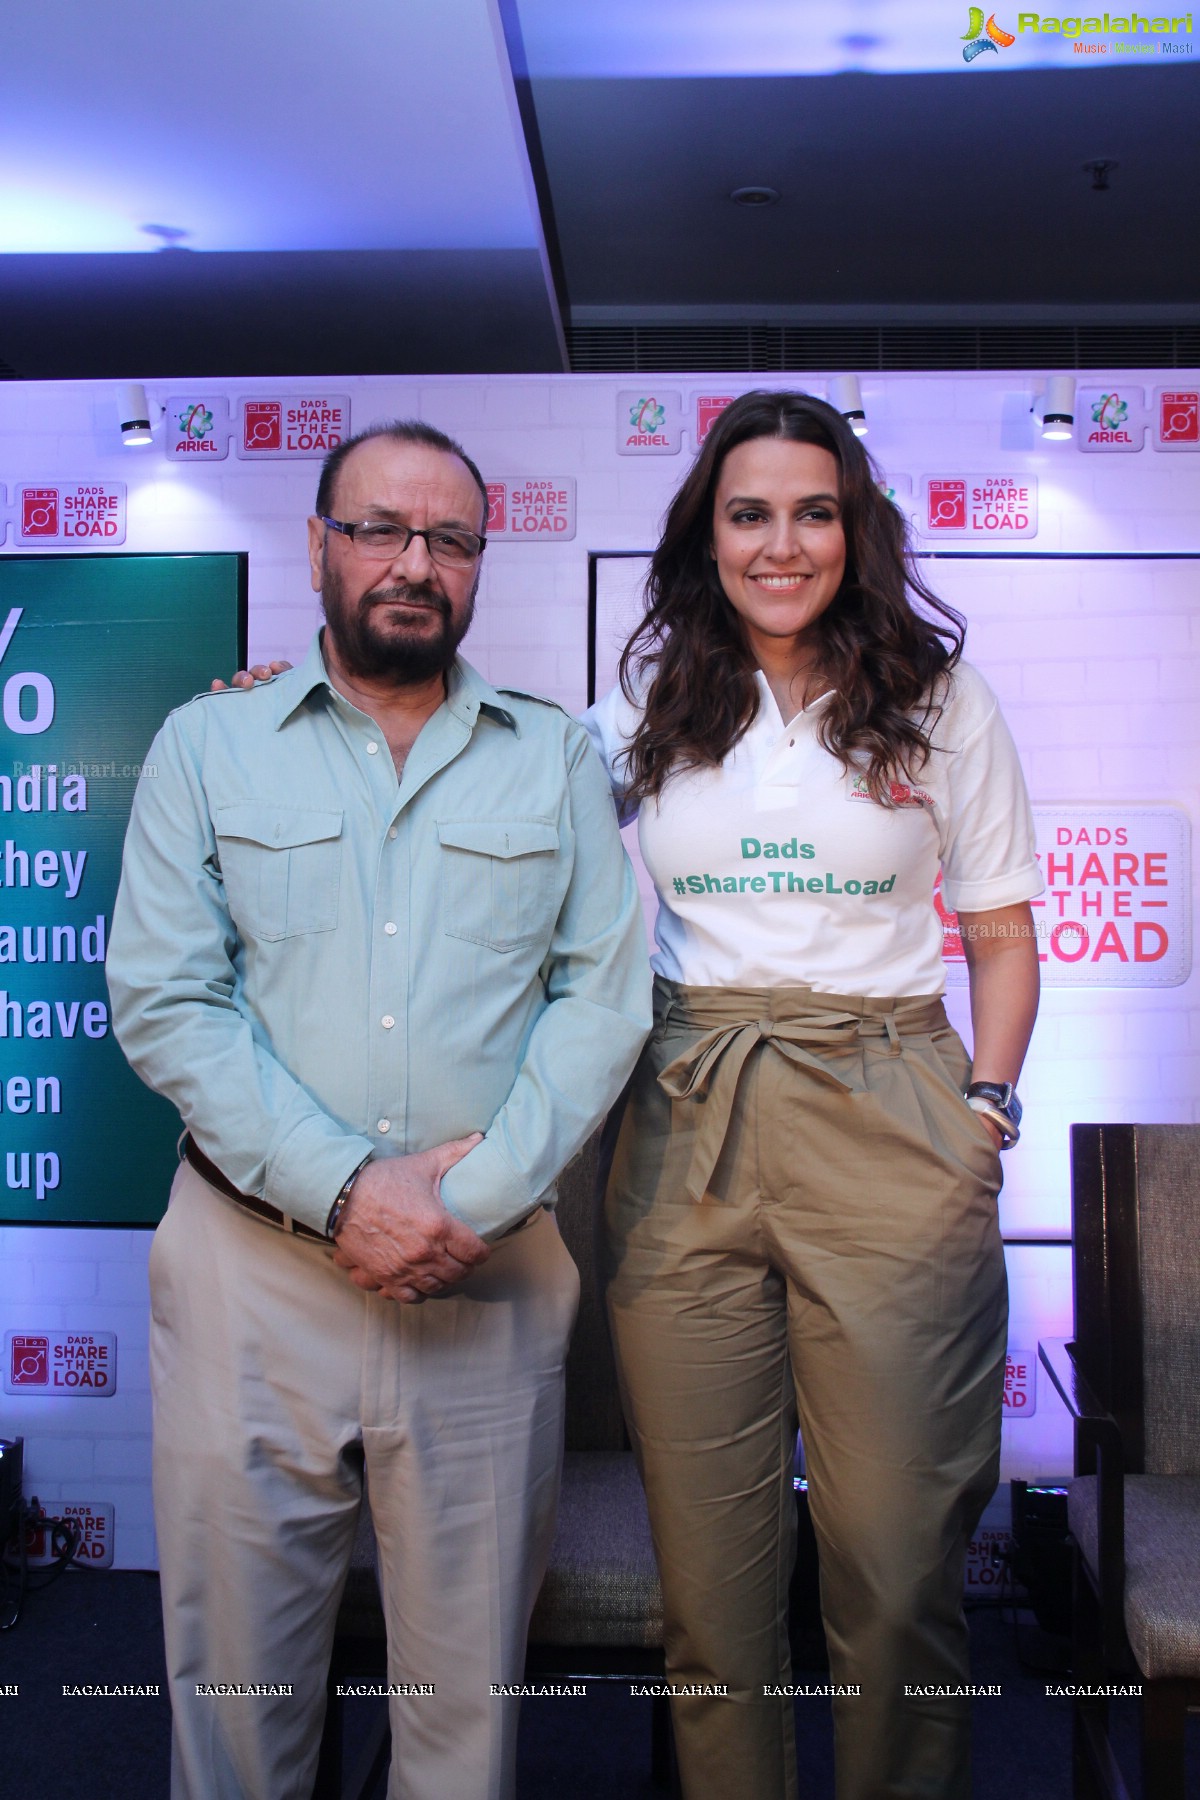 Ariel Share the Load Campaign with Neha Dhupia at Taj Deccan, Hyderabad